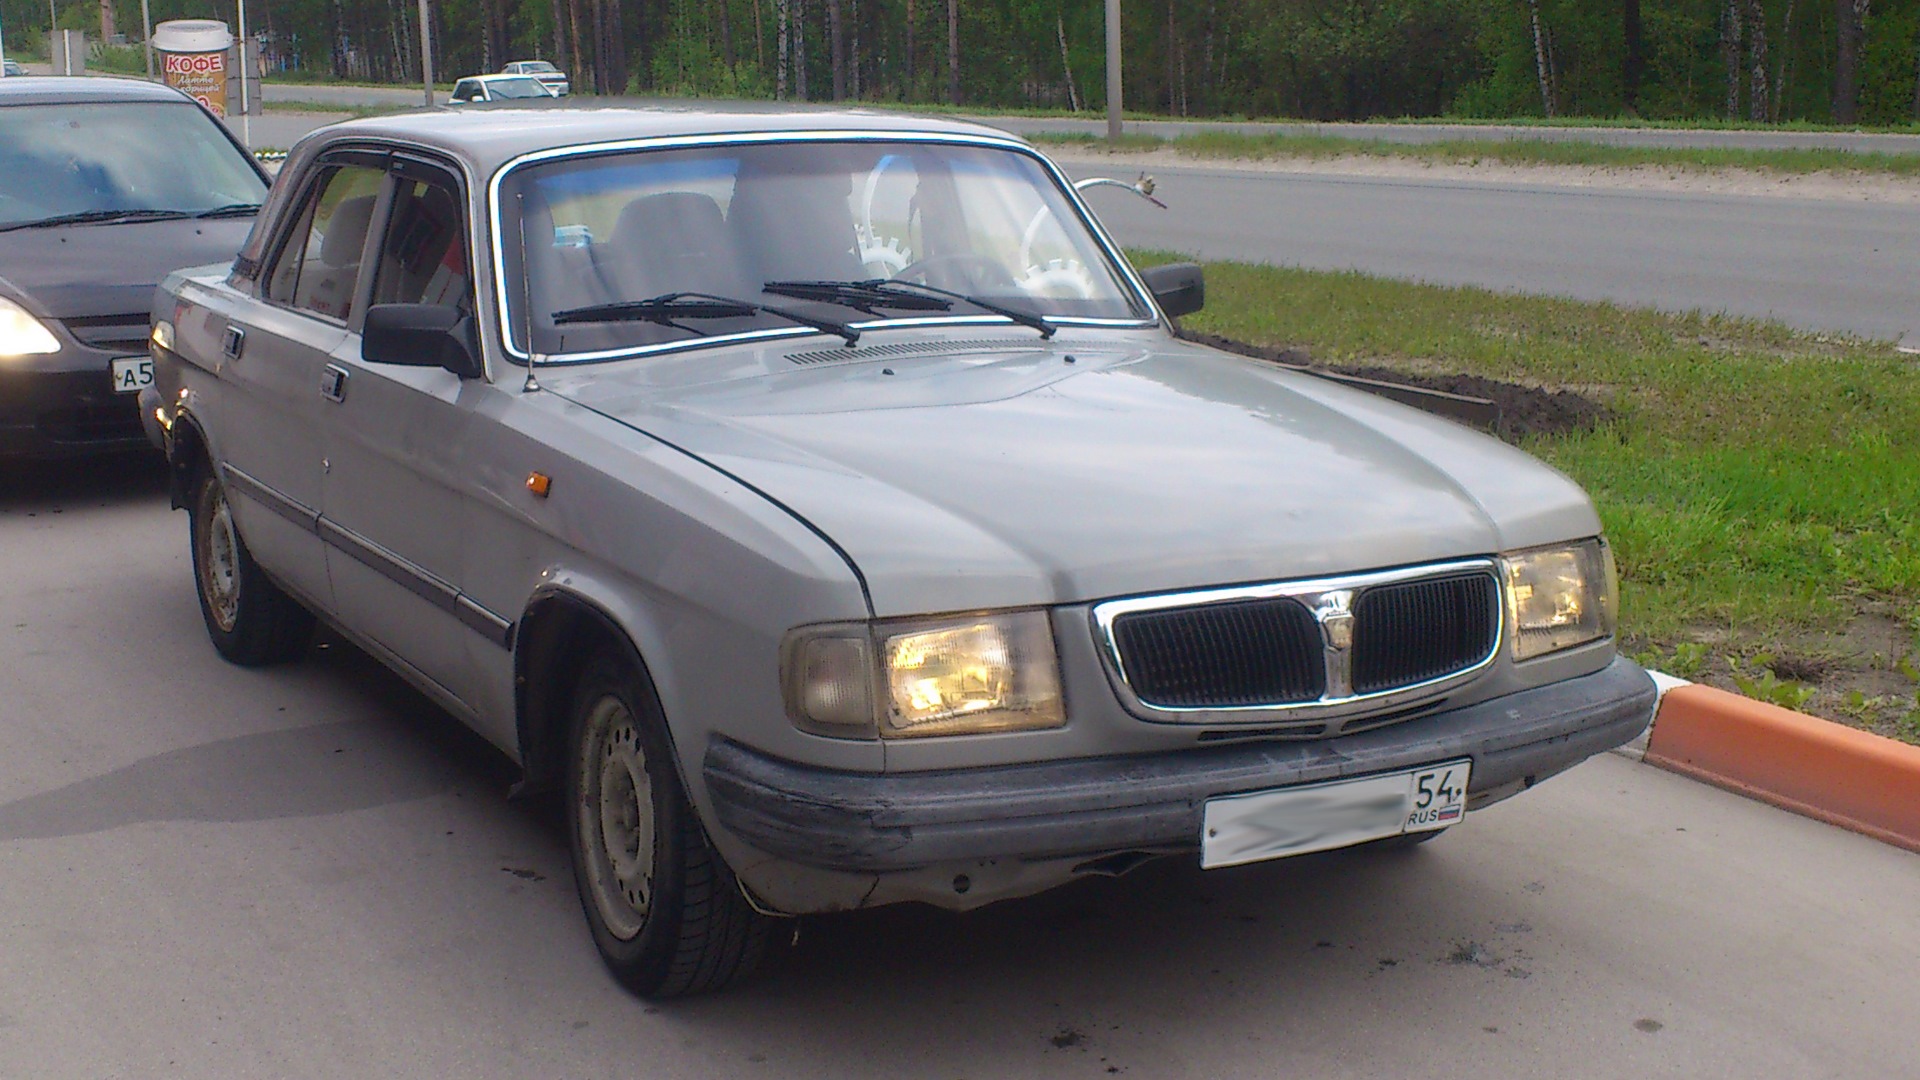 ГАЗ 3110 Волга 1998. ГАЗ 3110 серая. ГАЗ 3110 2.4. ГАЗ 3110 1998 серый. Газ 3110 б у